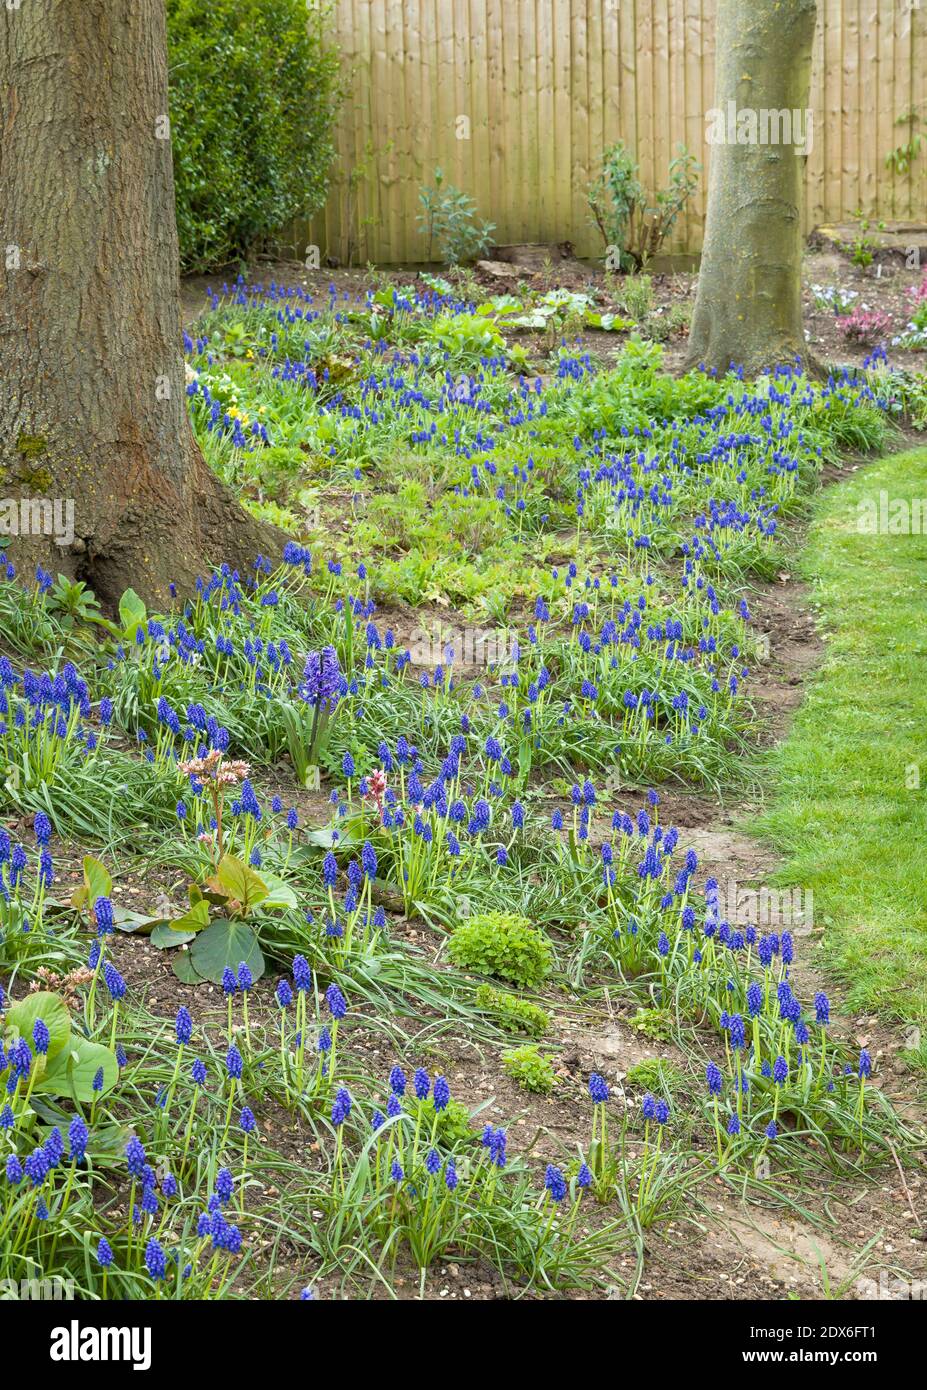 Bleu fleuri muscari armeniacum, jacinthes arméniennes de raisin en fleur dans un jardin boisé, Royaume-Uni Banque D'Images